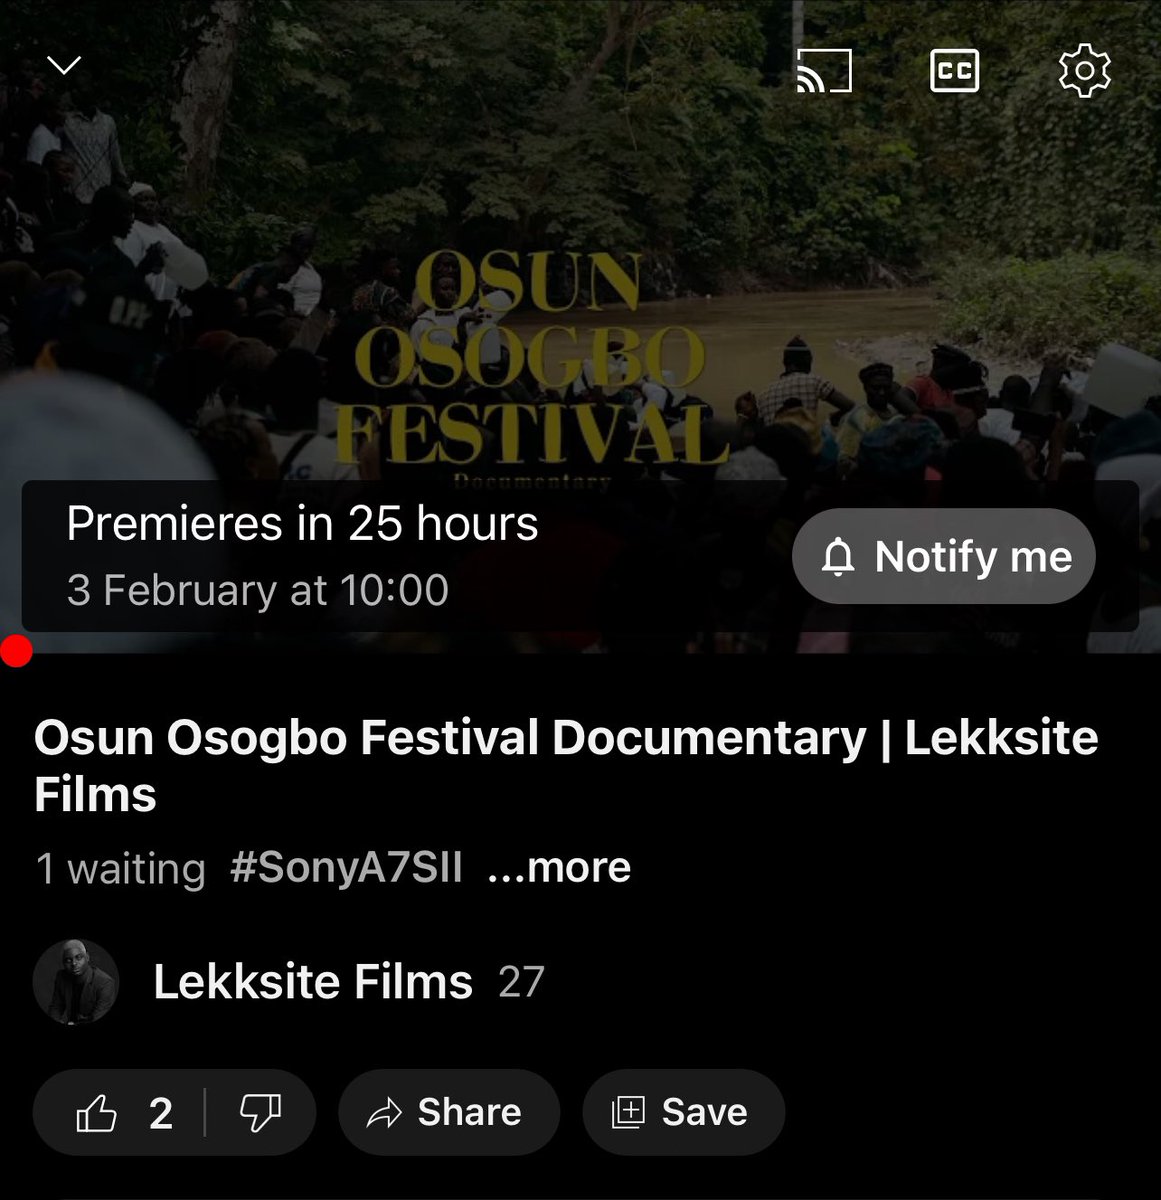 Tomorrow 10AM - Osun Osogbo Festival Documentary 

Subscribe to my YouTube Channel 

youtu.be/VWUQ5Hl-jzk?si…

#osun #osunosogbofestival #osunosogbo #osunstate #osogbo #osunosogbofestivaldocumentary #lekksite #festivalinnigeria #sonyfootage  #sonya7sii #sonya7rii